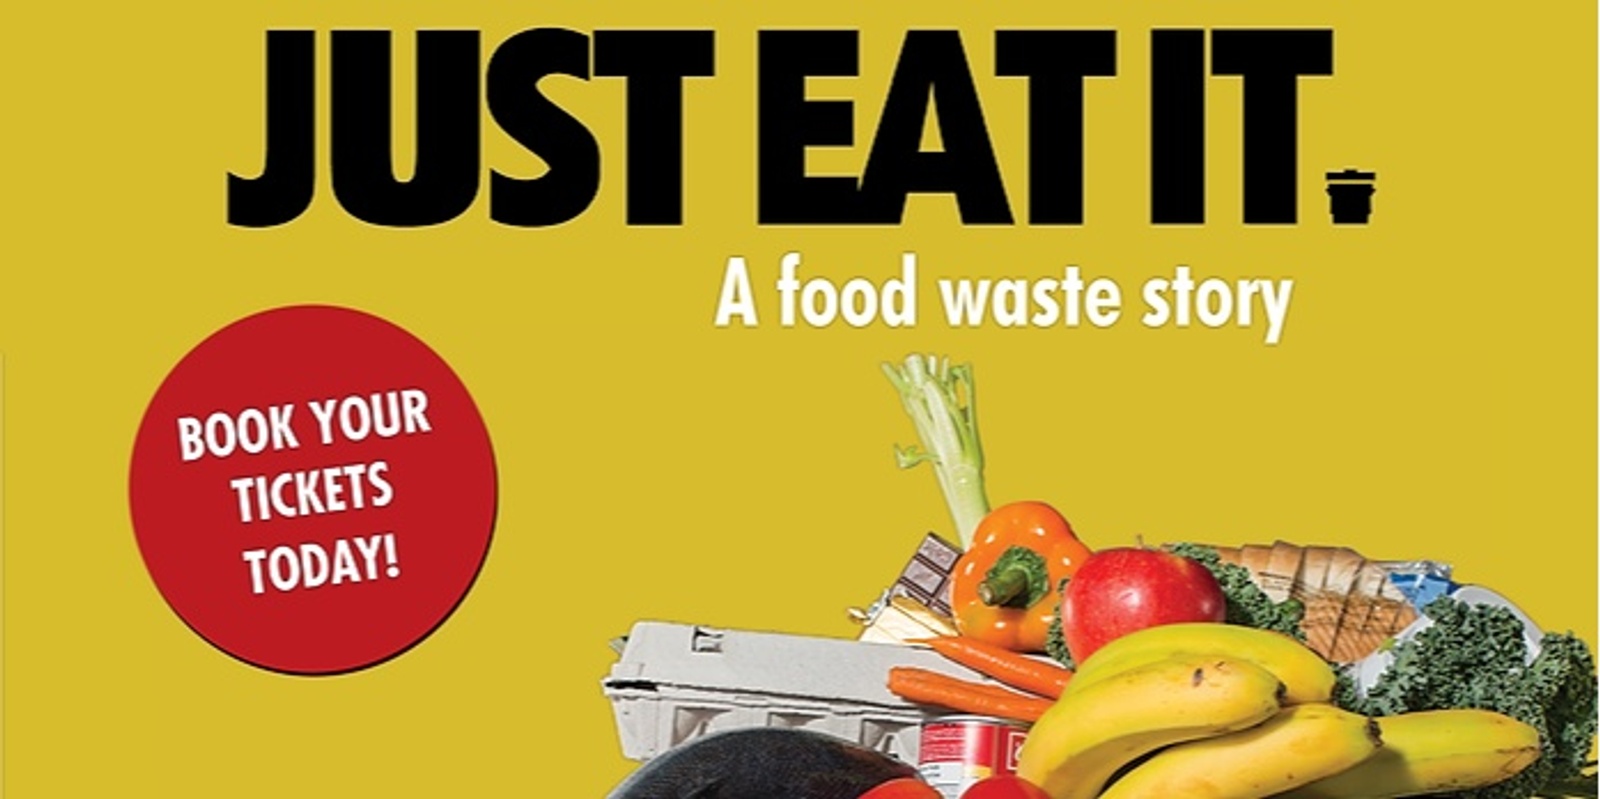 Just Eat It - Movie Screening - Love Food Hate Waste 